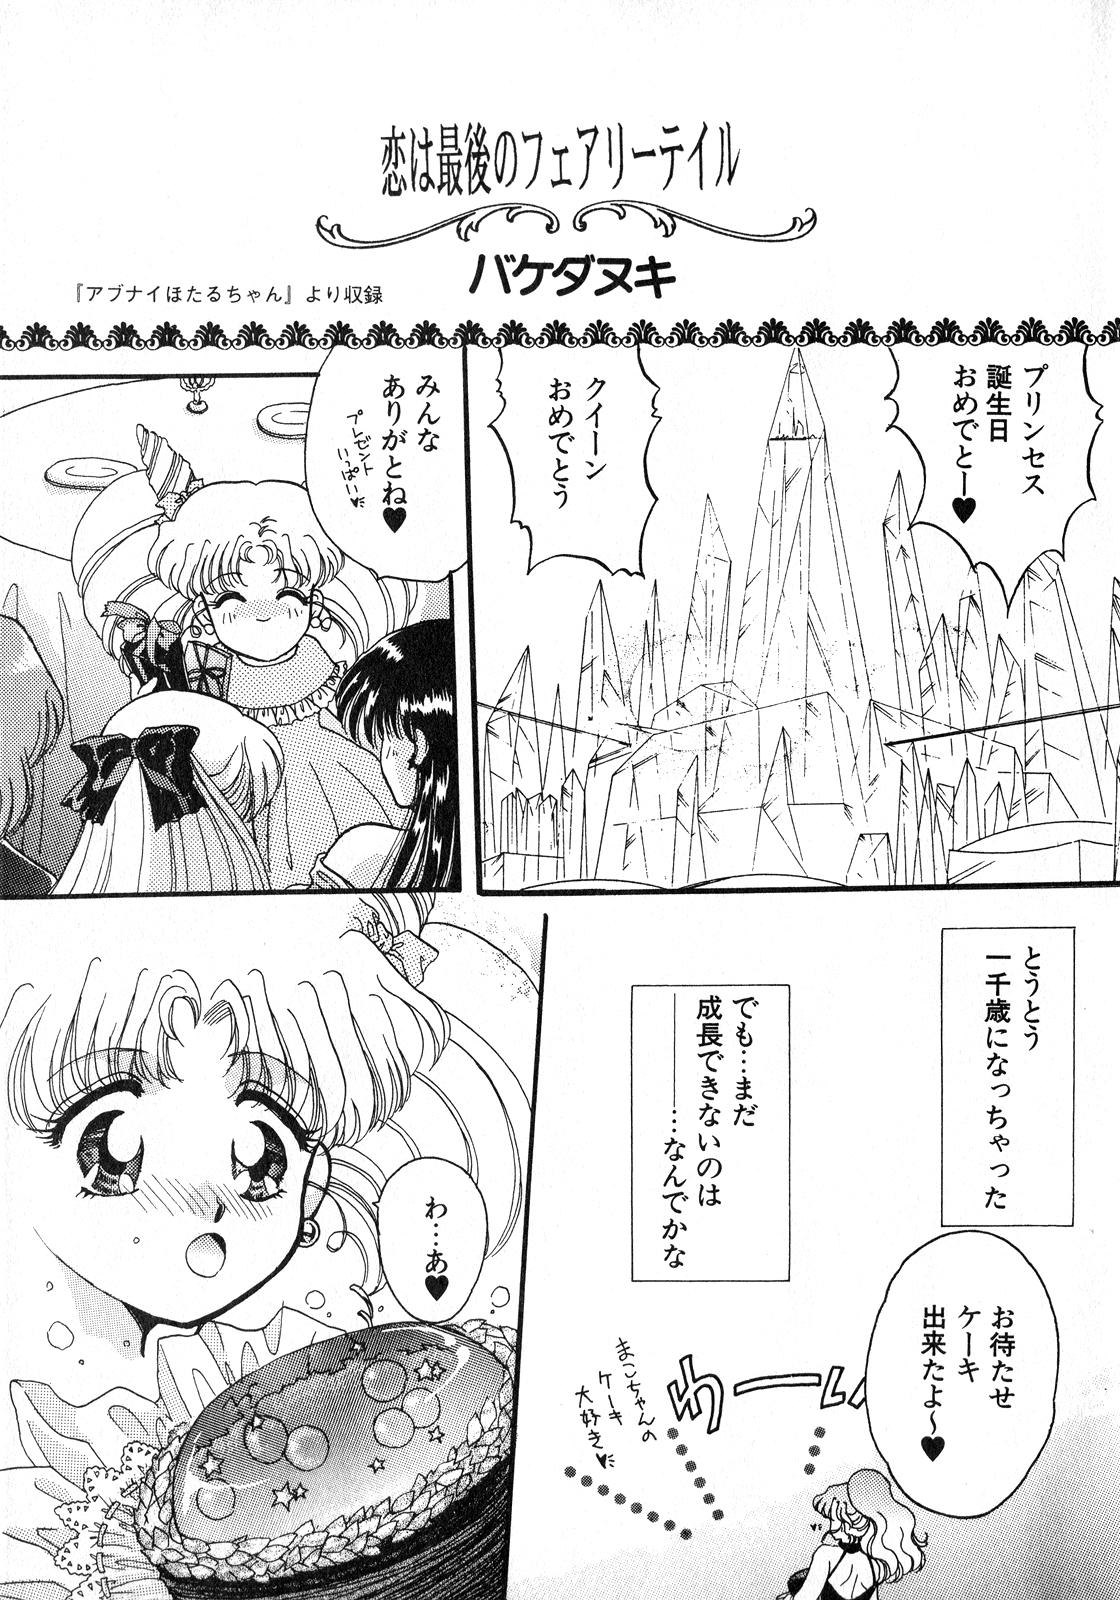 Boquete Lunatic Party 8 - Sailor moon Whores - Page 4